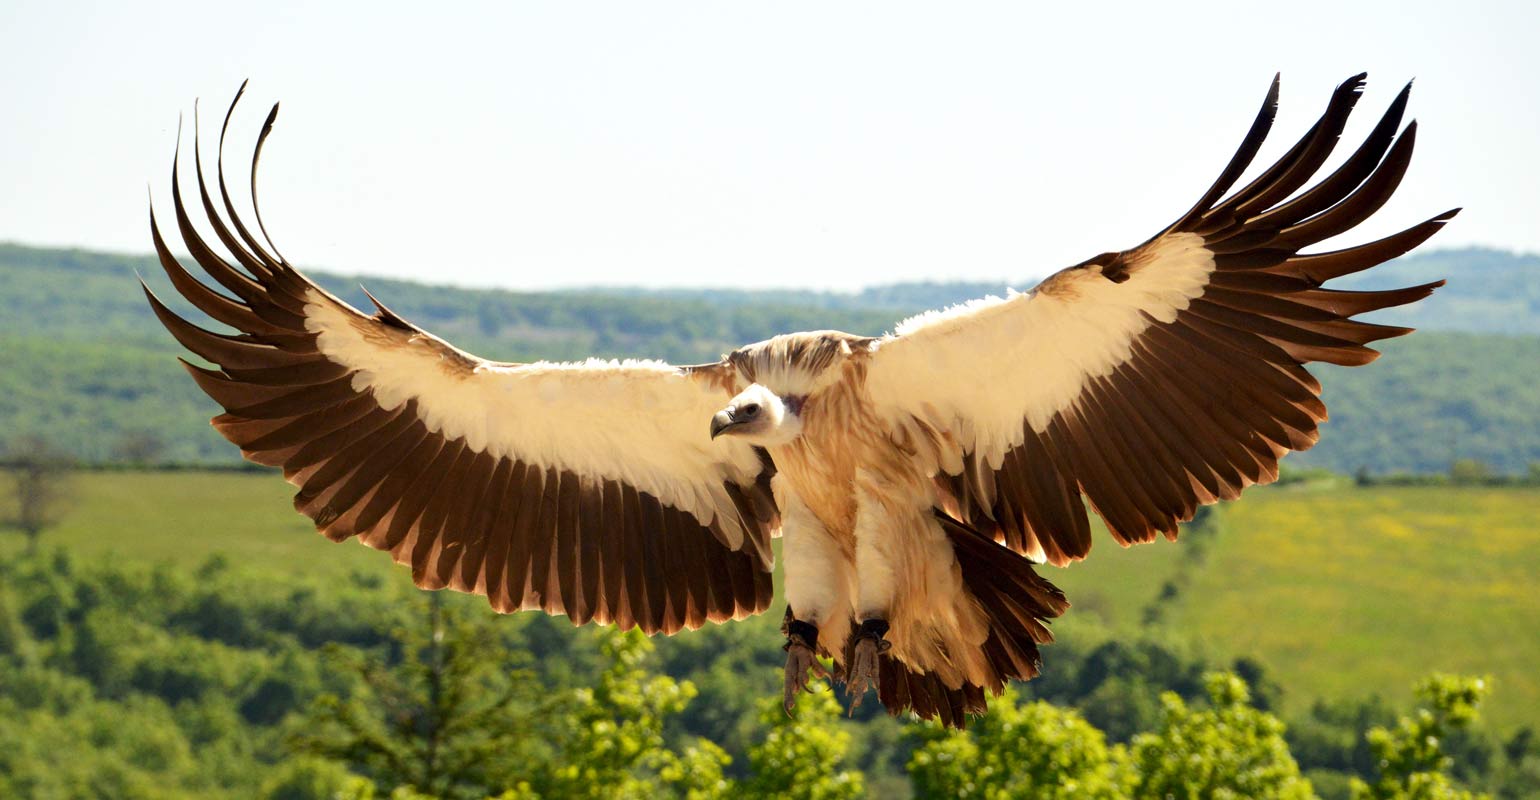 Parc ornithologique Midi-Pyrénées : Le Vautour de l'Himalaya pendant un des spectacles d'oiseaux au Rocher des Aigles, parc ornithologique en Midi-Pyrénée.